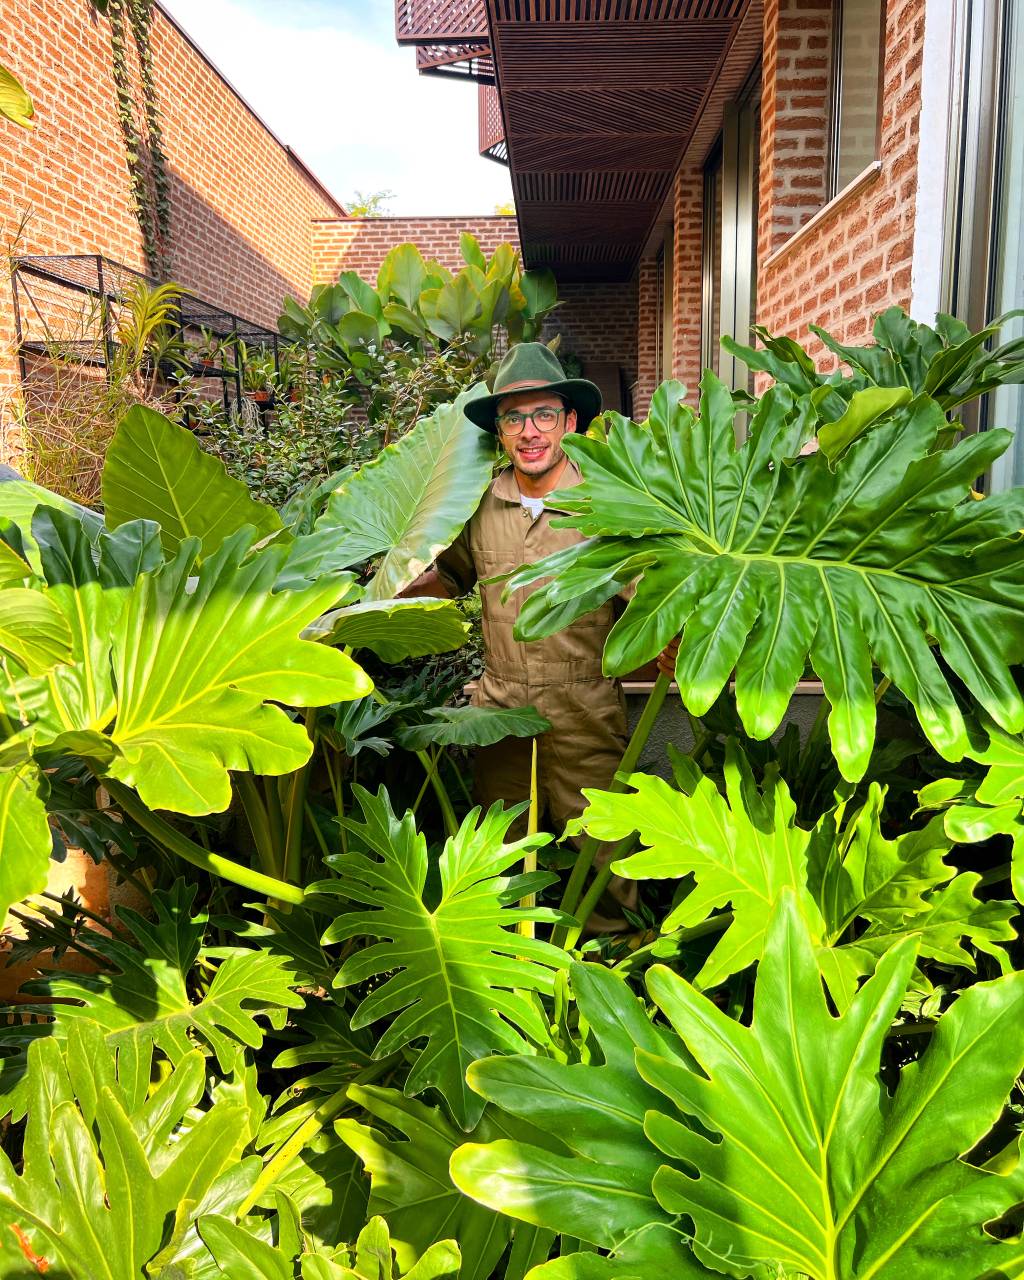 João Queiroz posa de chapéu em meio a grandes plantas em vários tons de verde.